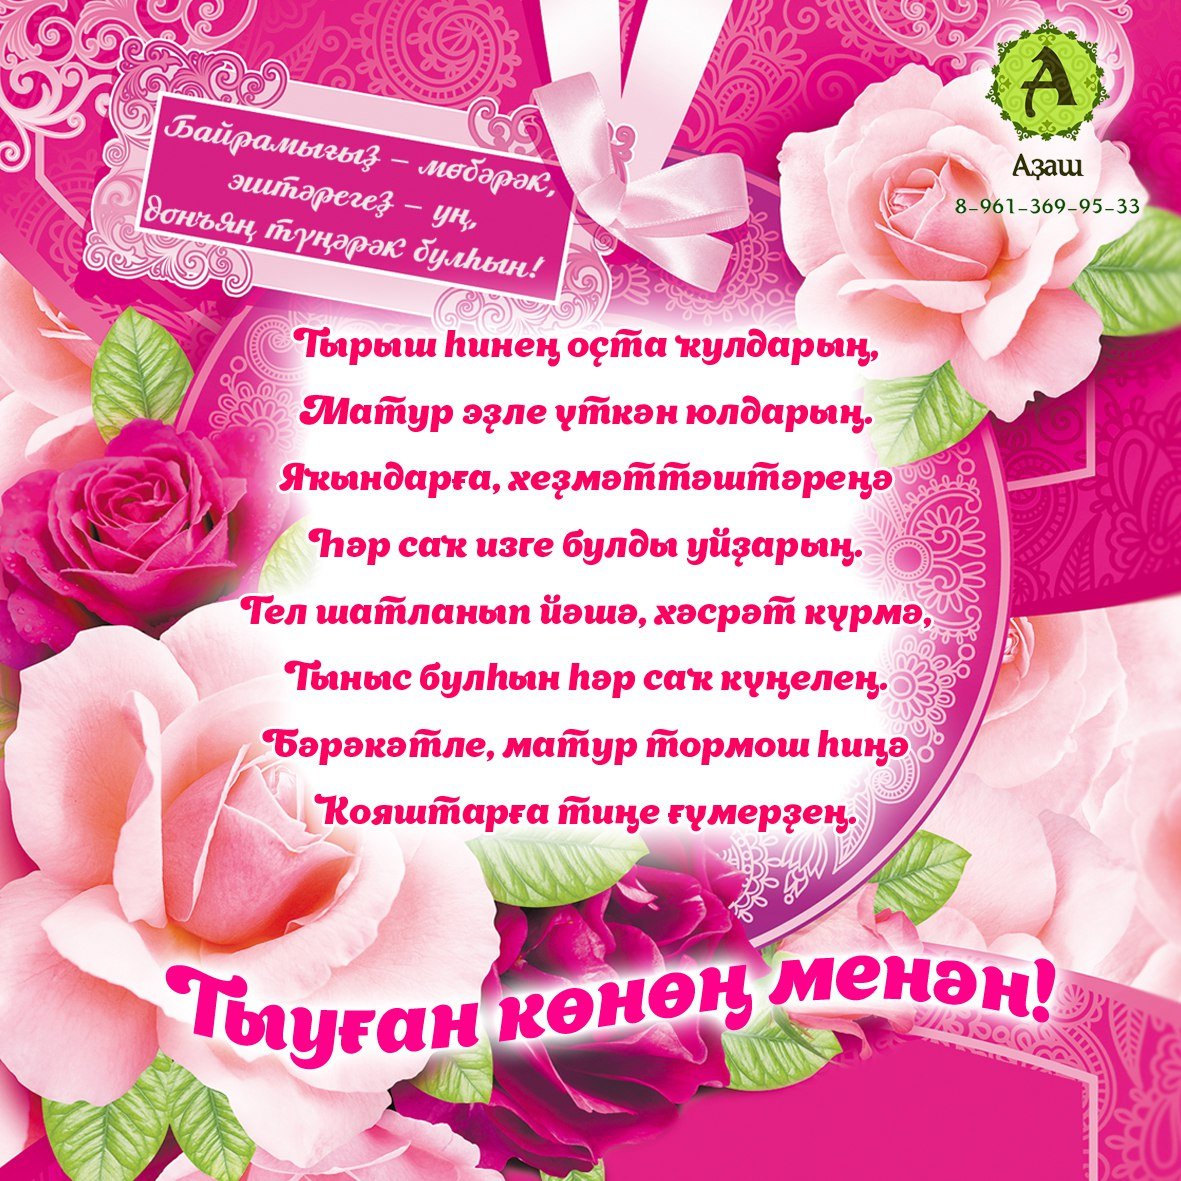 Поздравления на карачаевском языке. Поздравления с днём рождения на башкирском. Поздравление с юбилеем на башкирском. Поздравления с днём рождения на башкирском языке. Поздравления с днём рождения маме на башкирском языке.